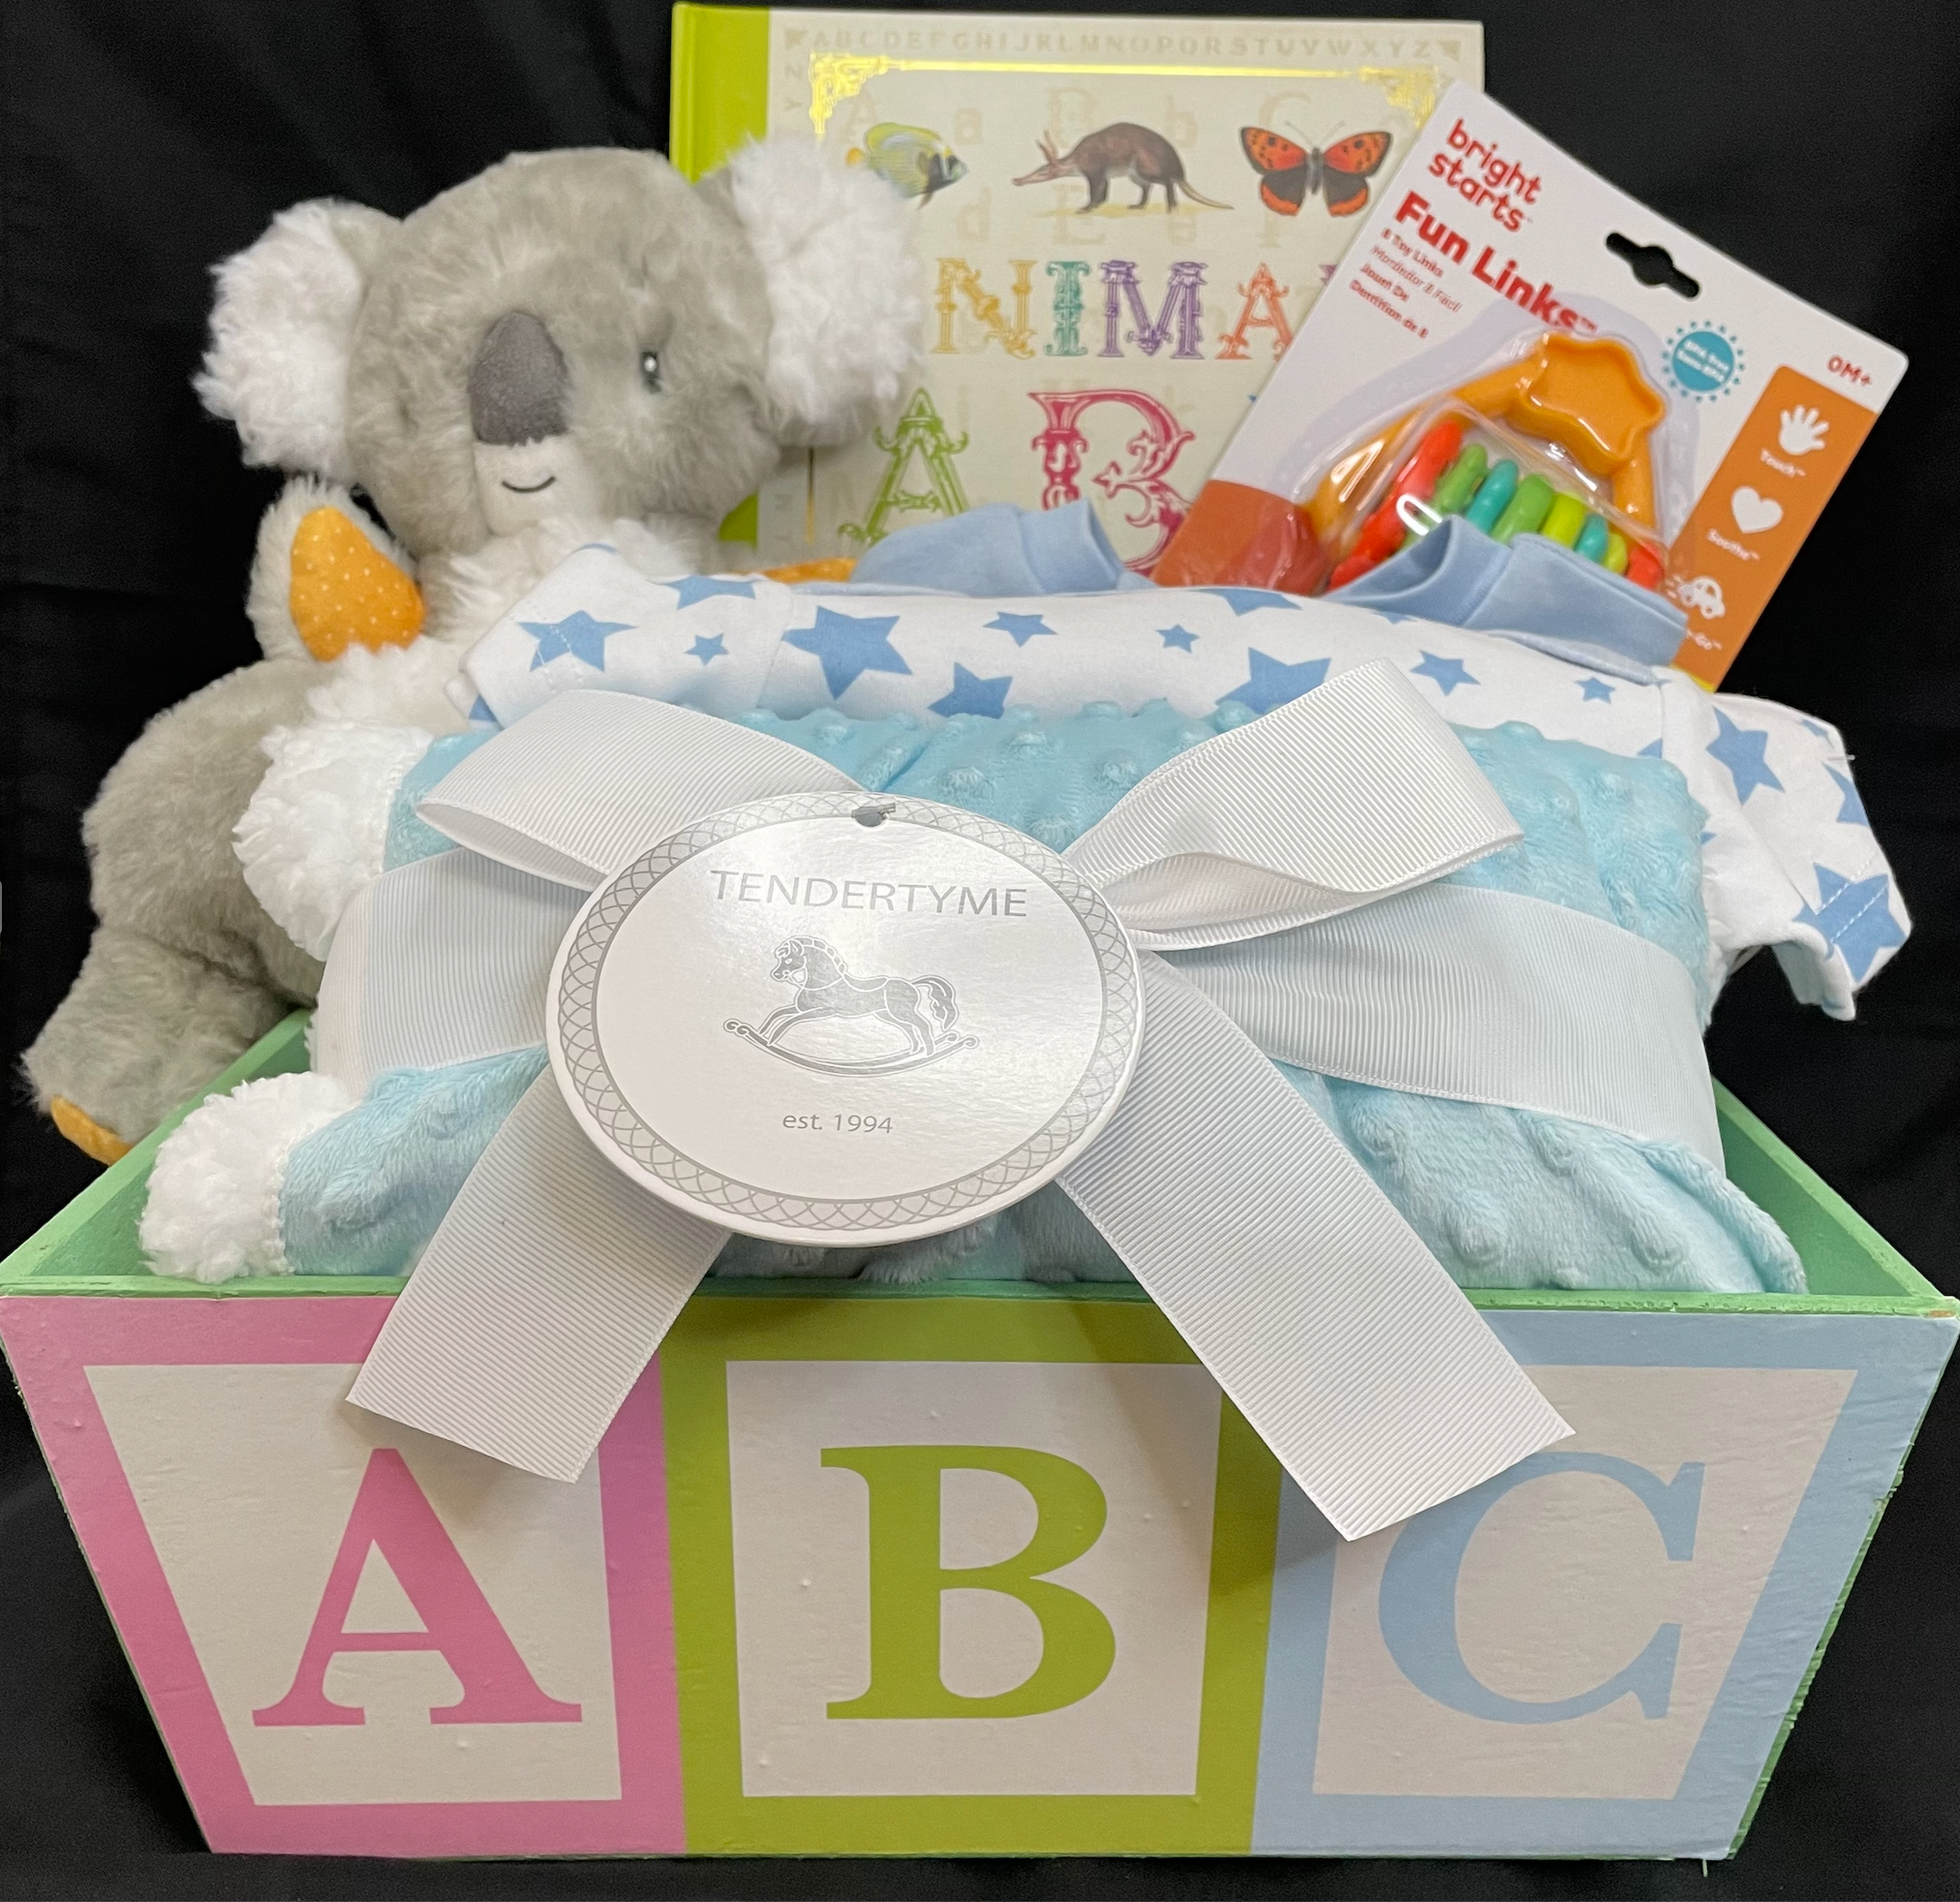 Down Under Koala Gift Basket for New Baby - Blue